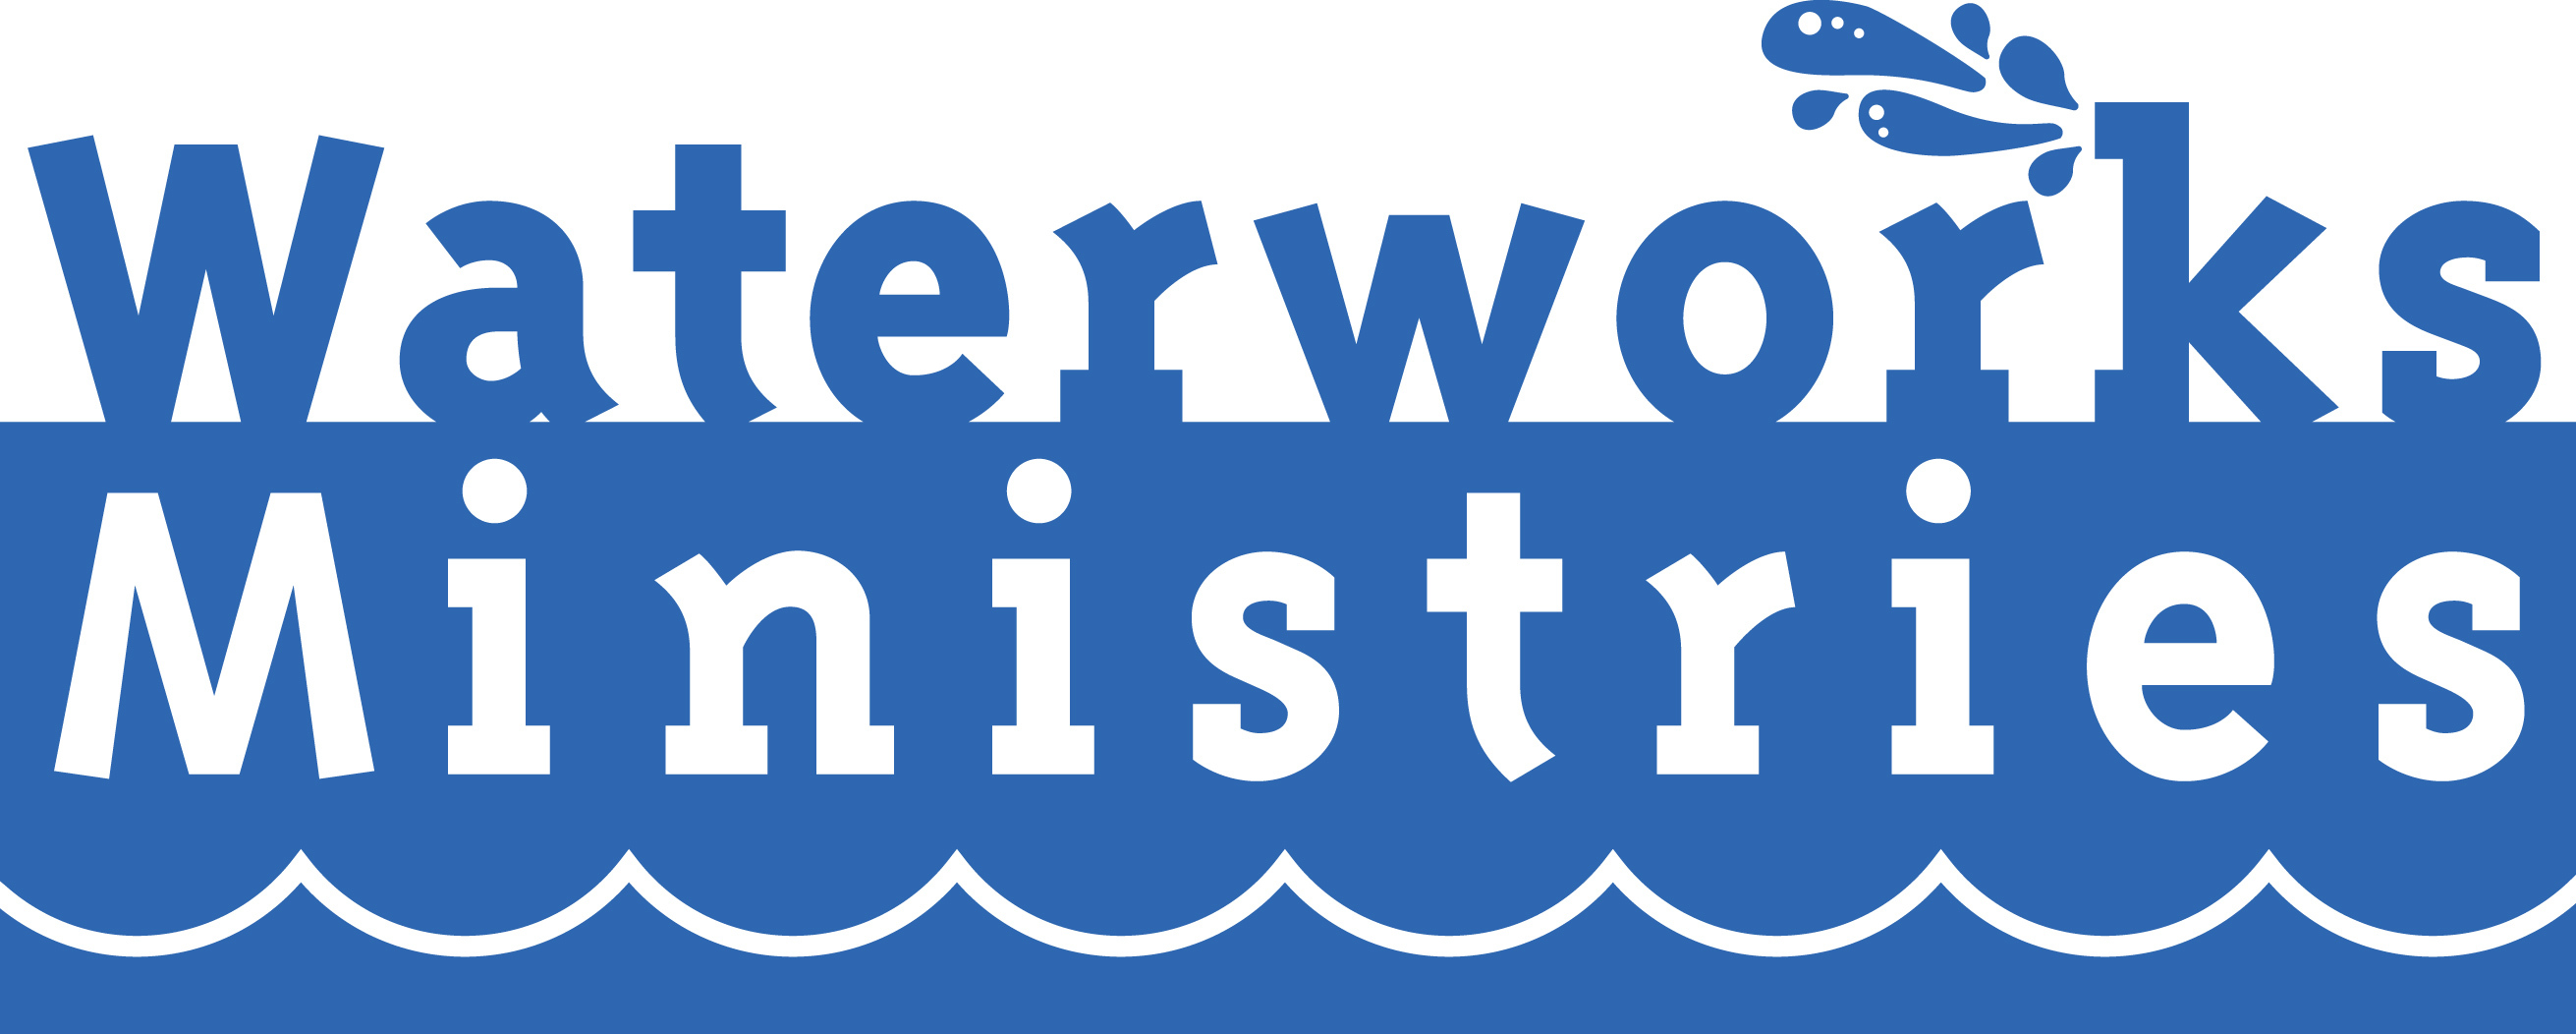 Waterworks Podcast